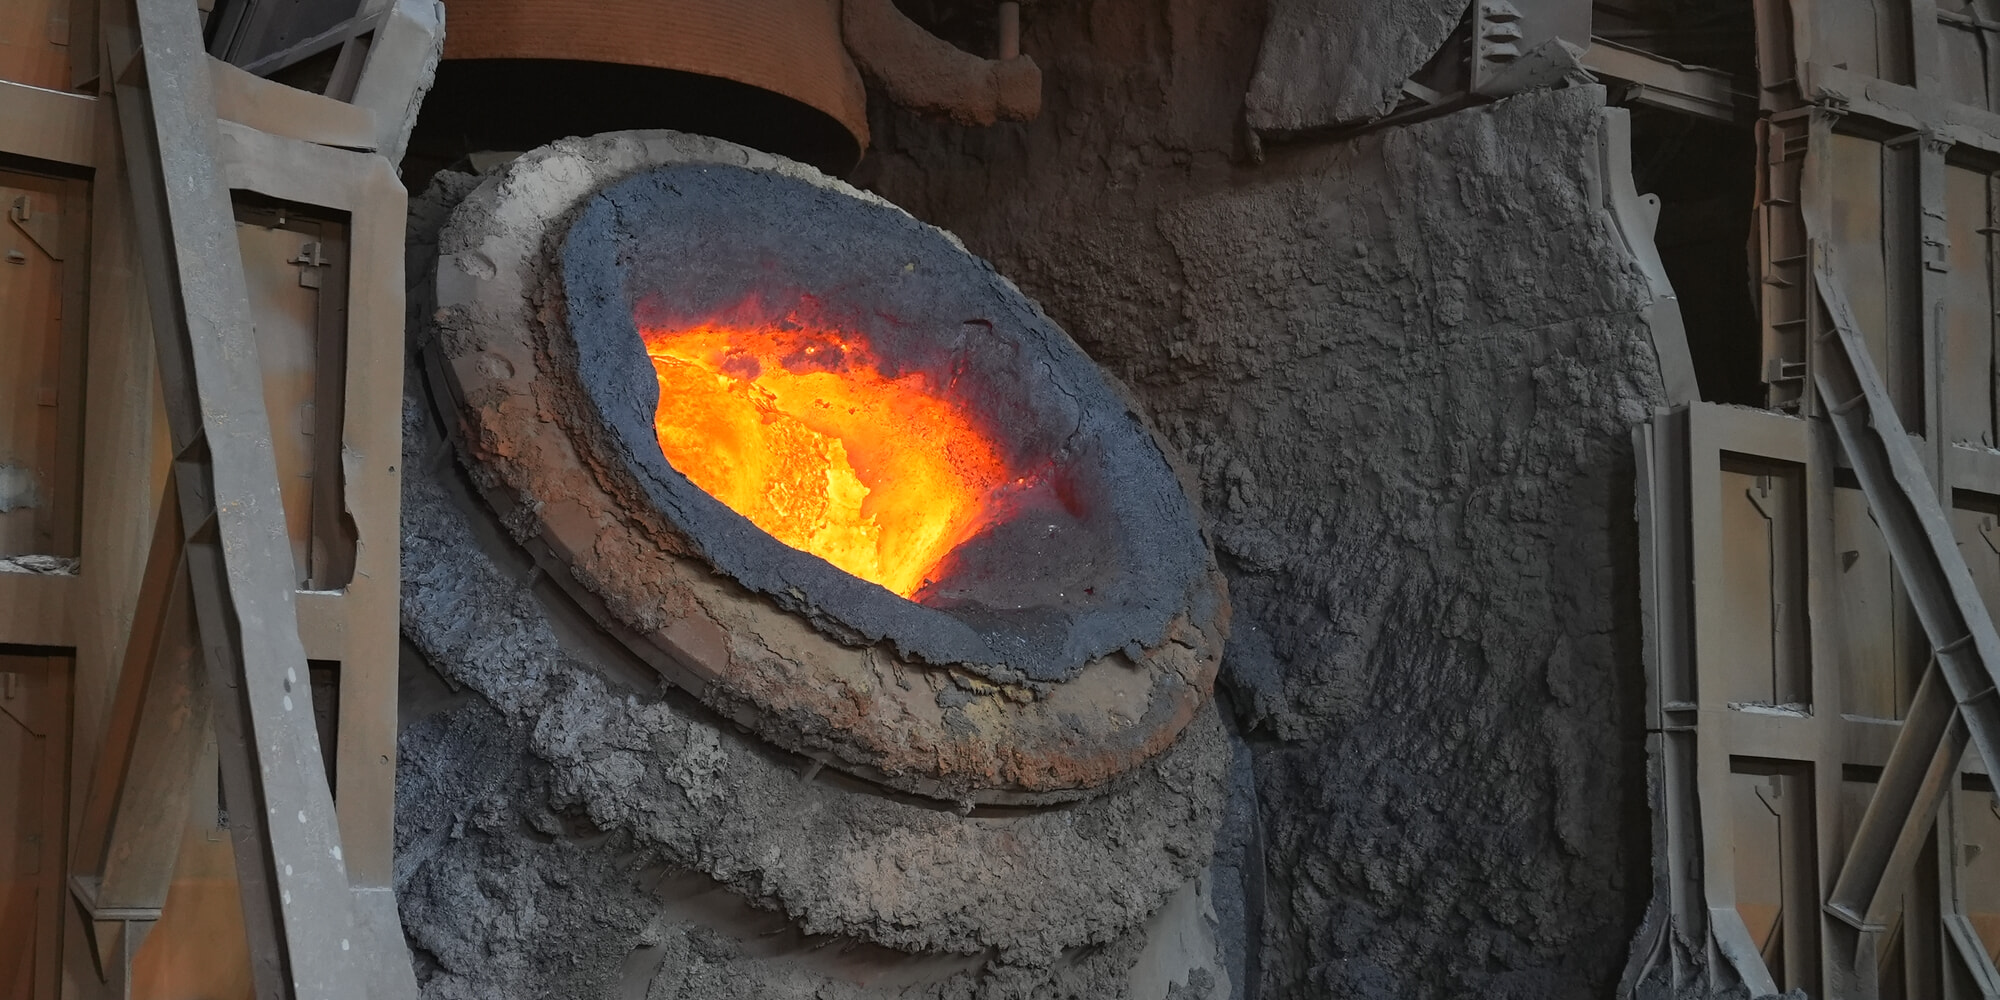 Pouring cauldron